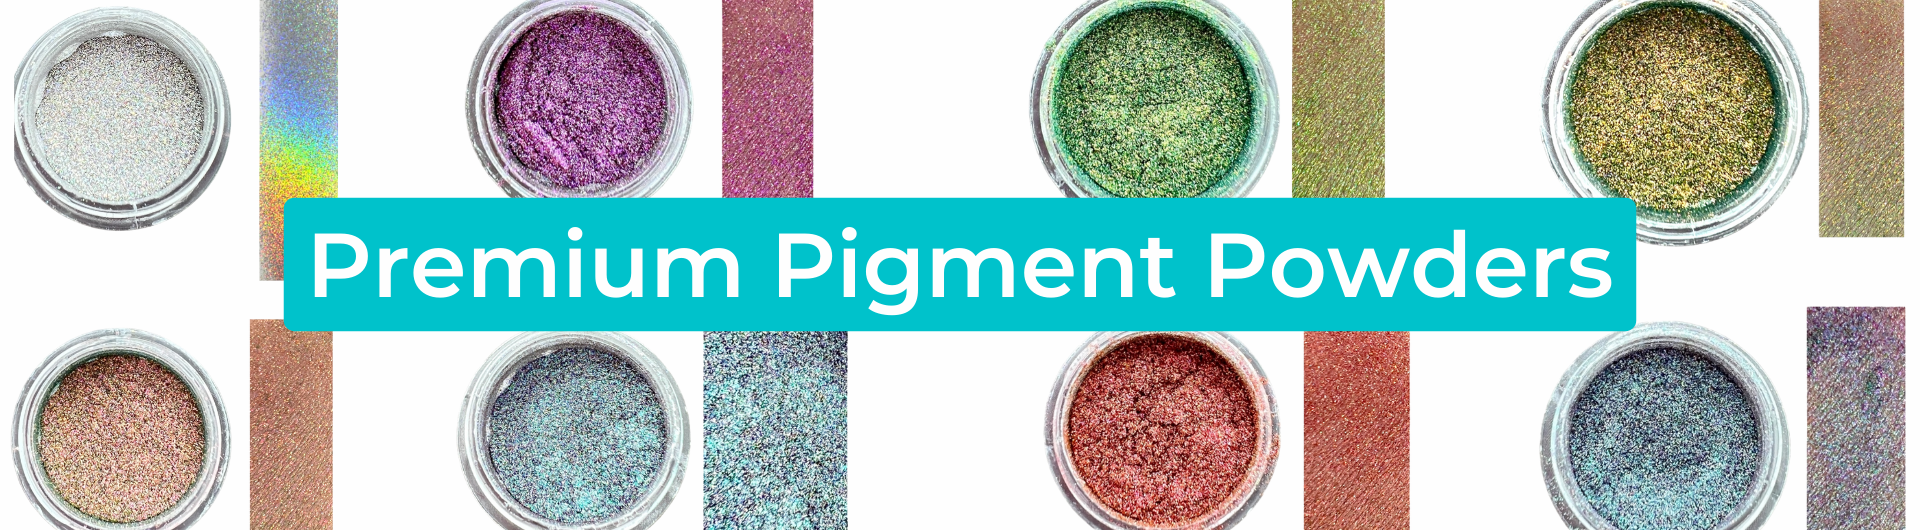 Premium Pigment Powders